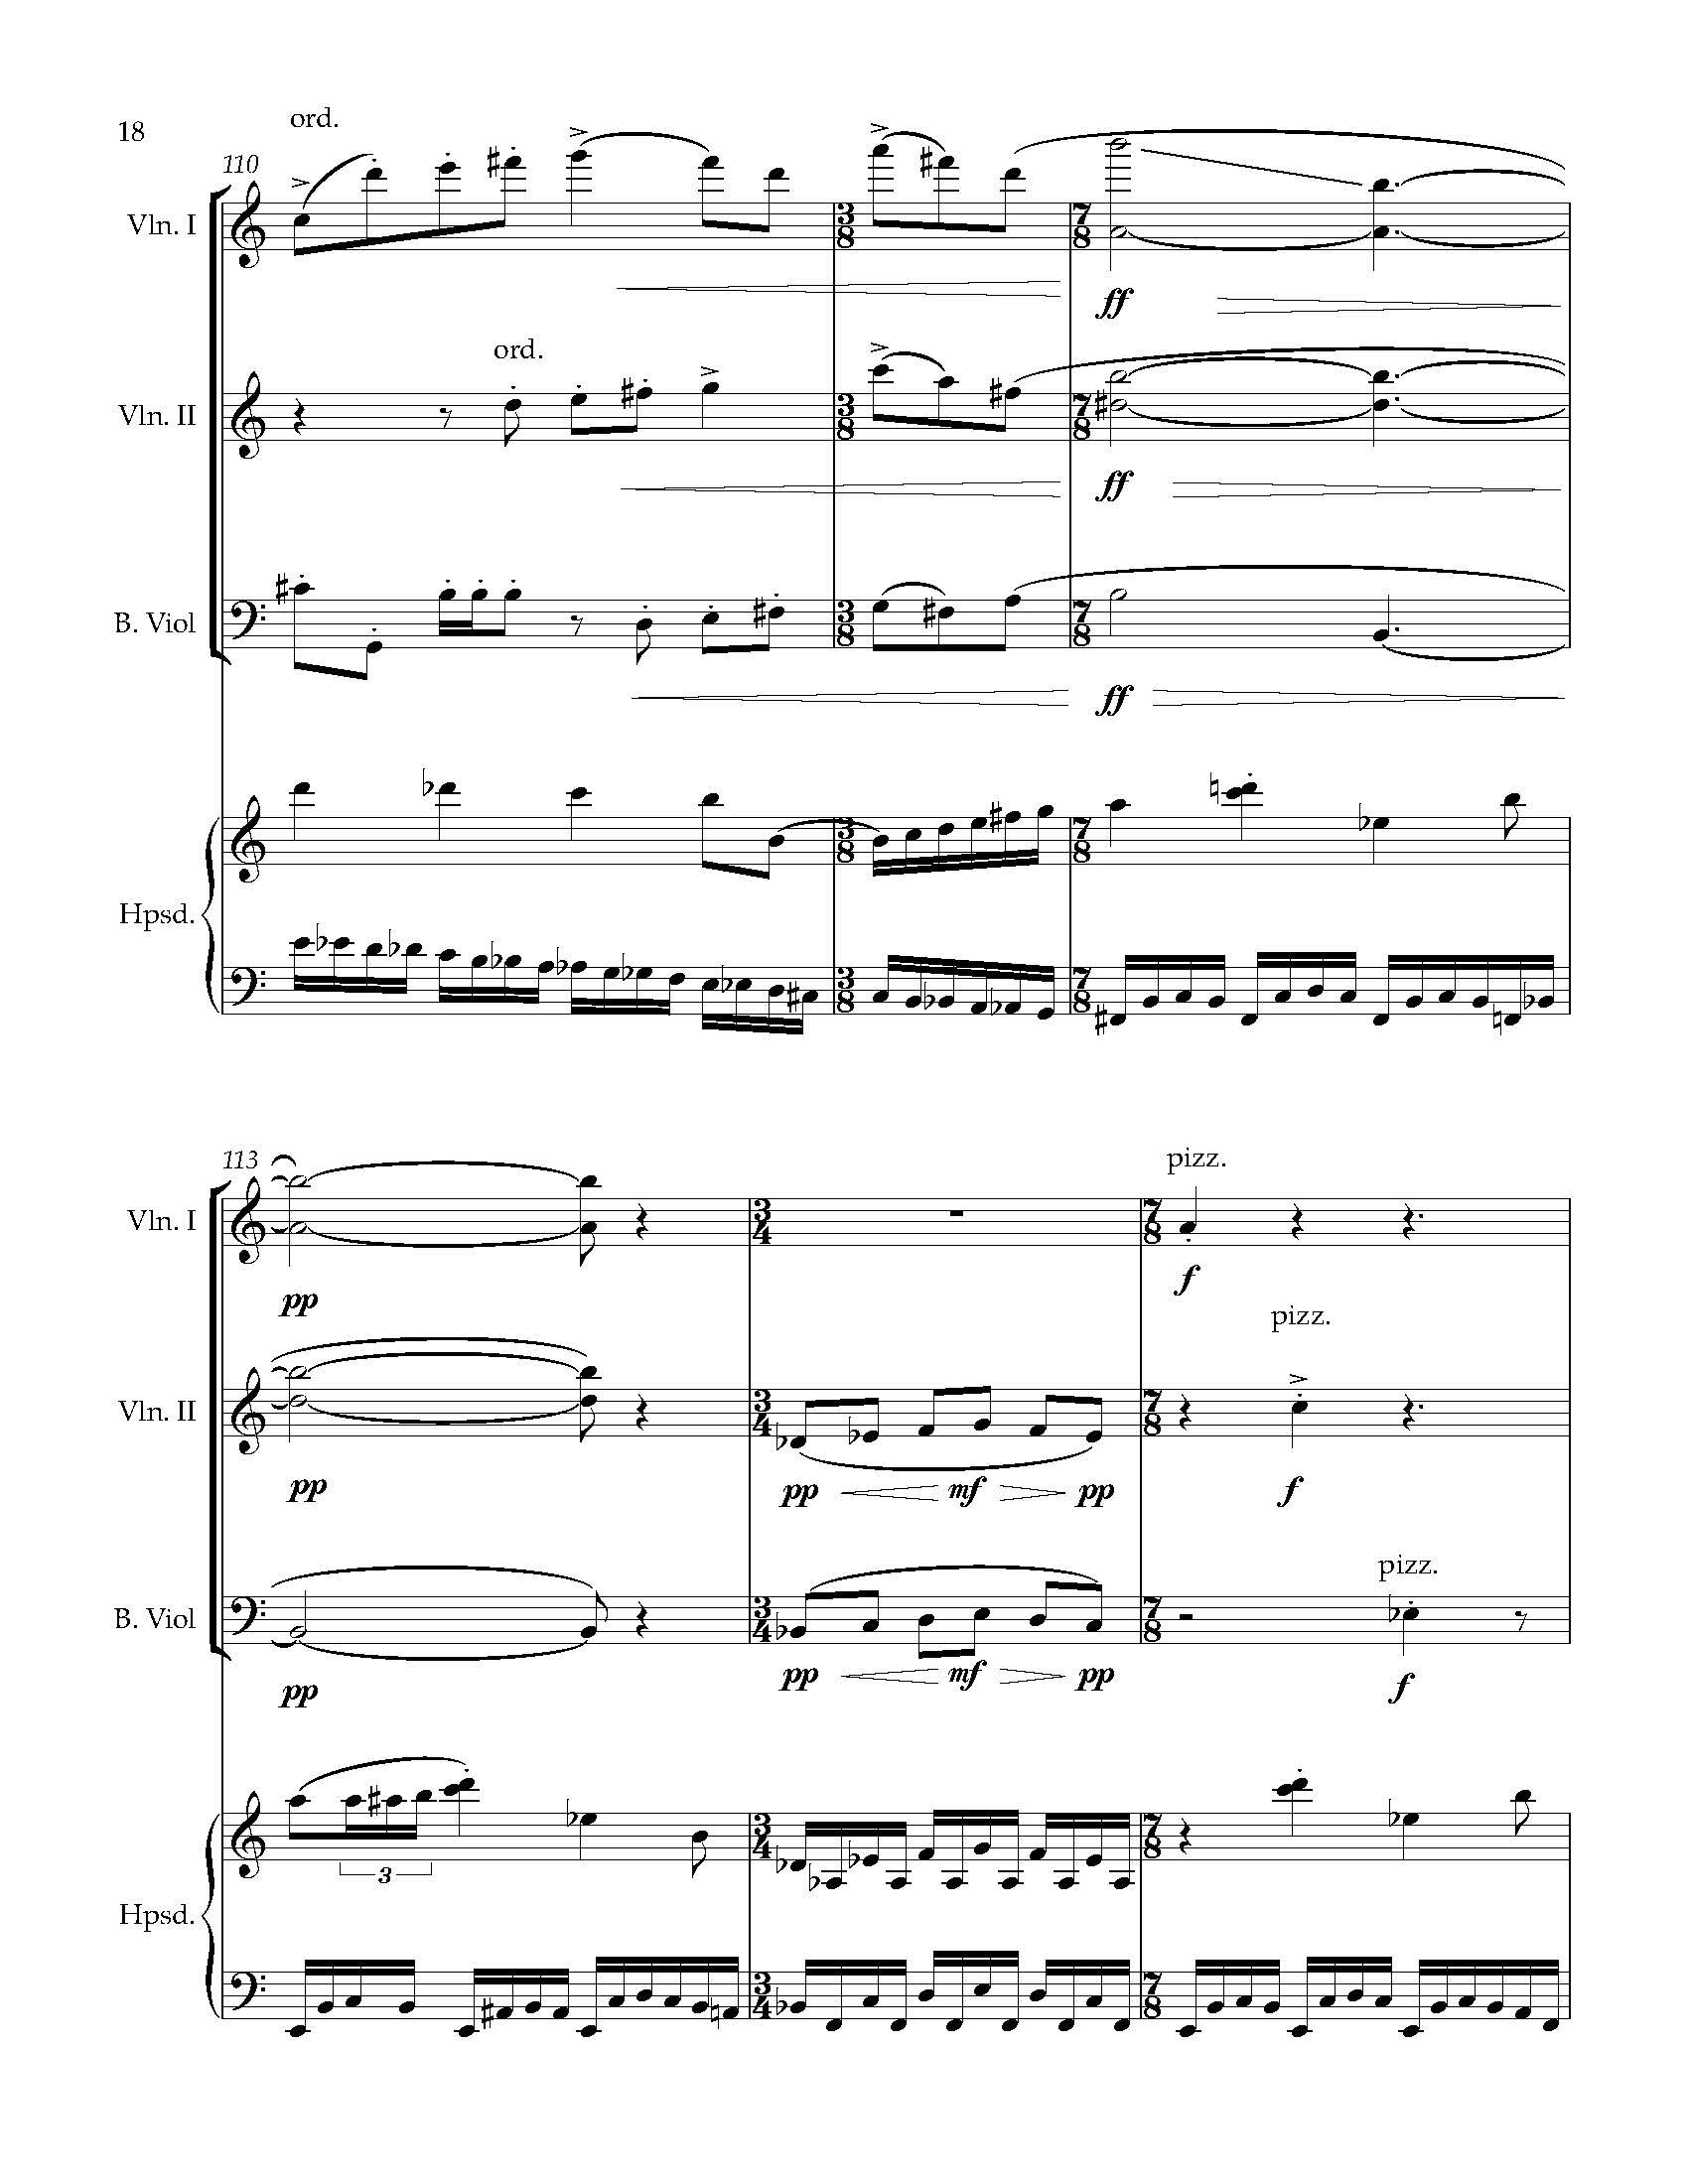 Sonata Sonare - Complete Score_Page_24.jpg